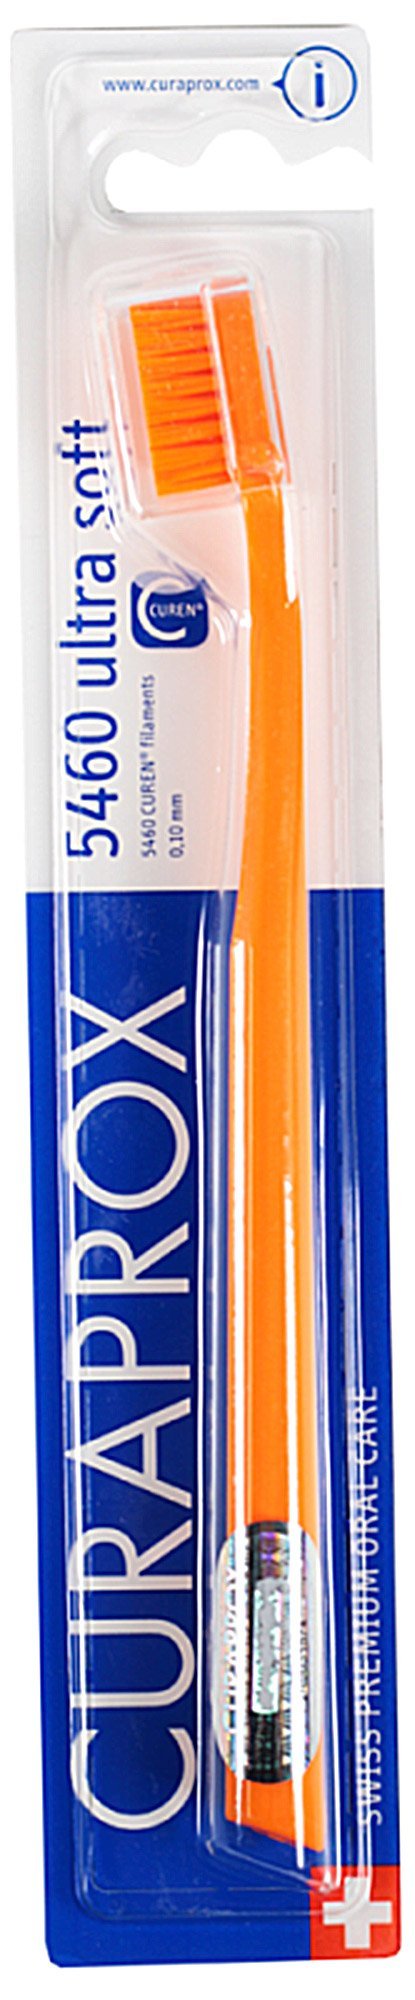 Купить Зубные щетки CURAPROX 5460 Ultra Soft Оранжевый, Curaden International